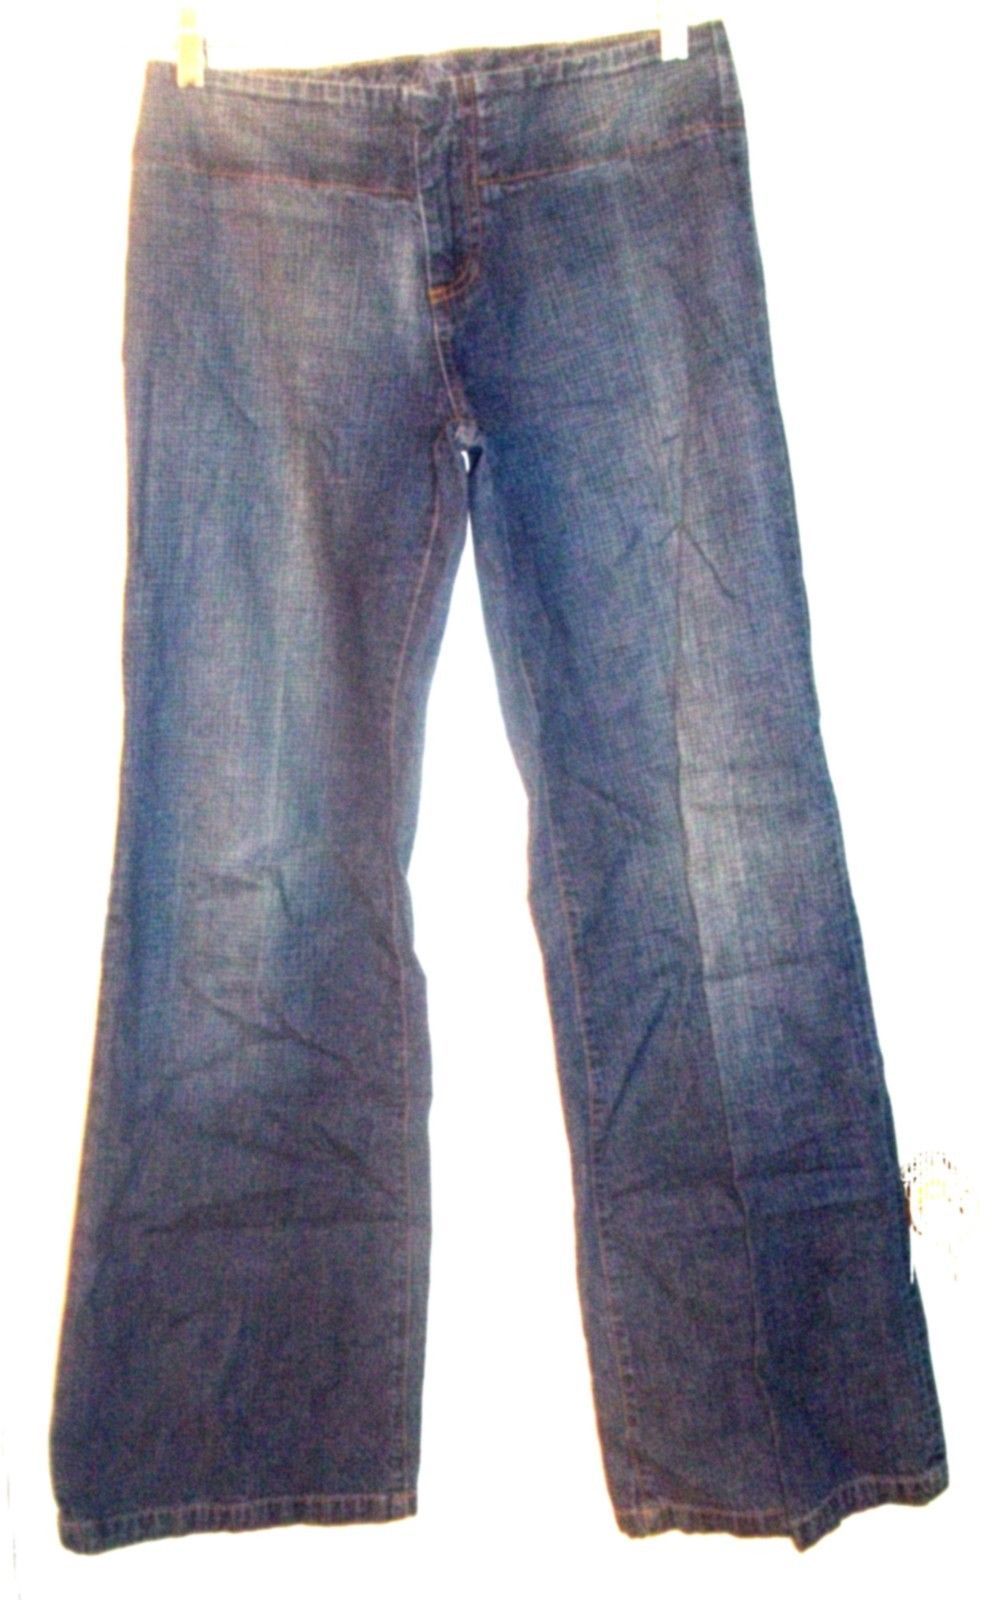 pocketless jeans for sale